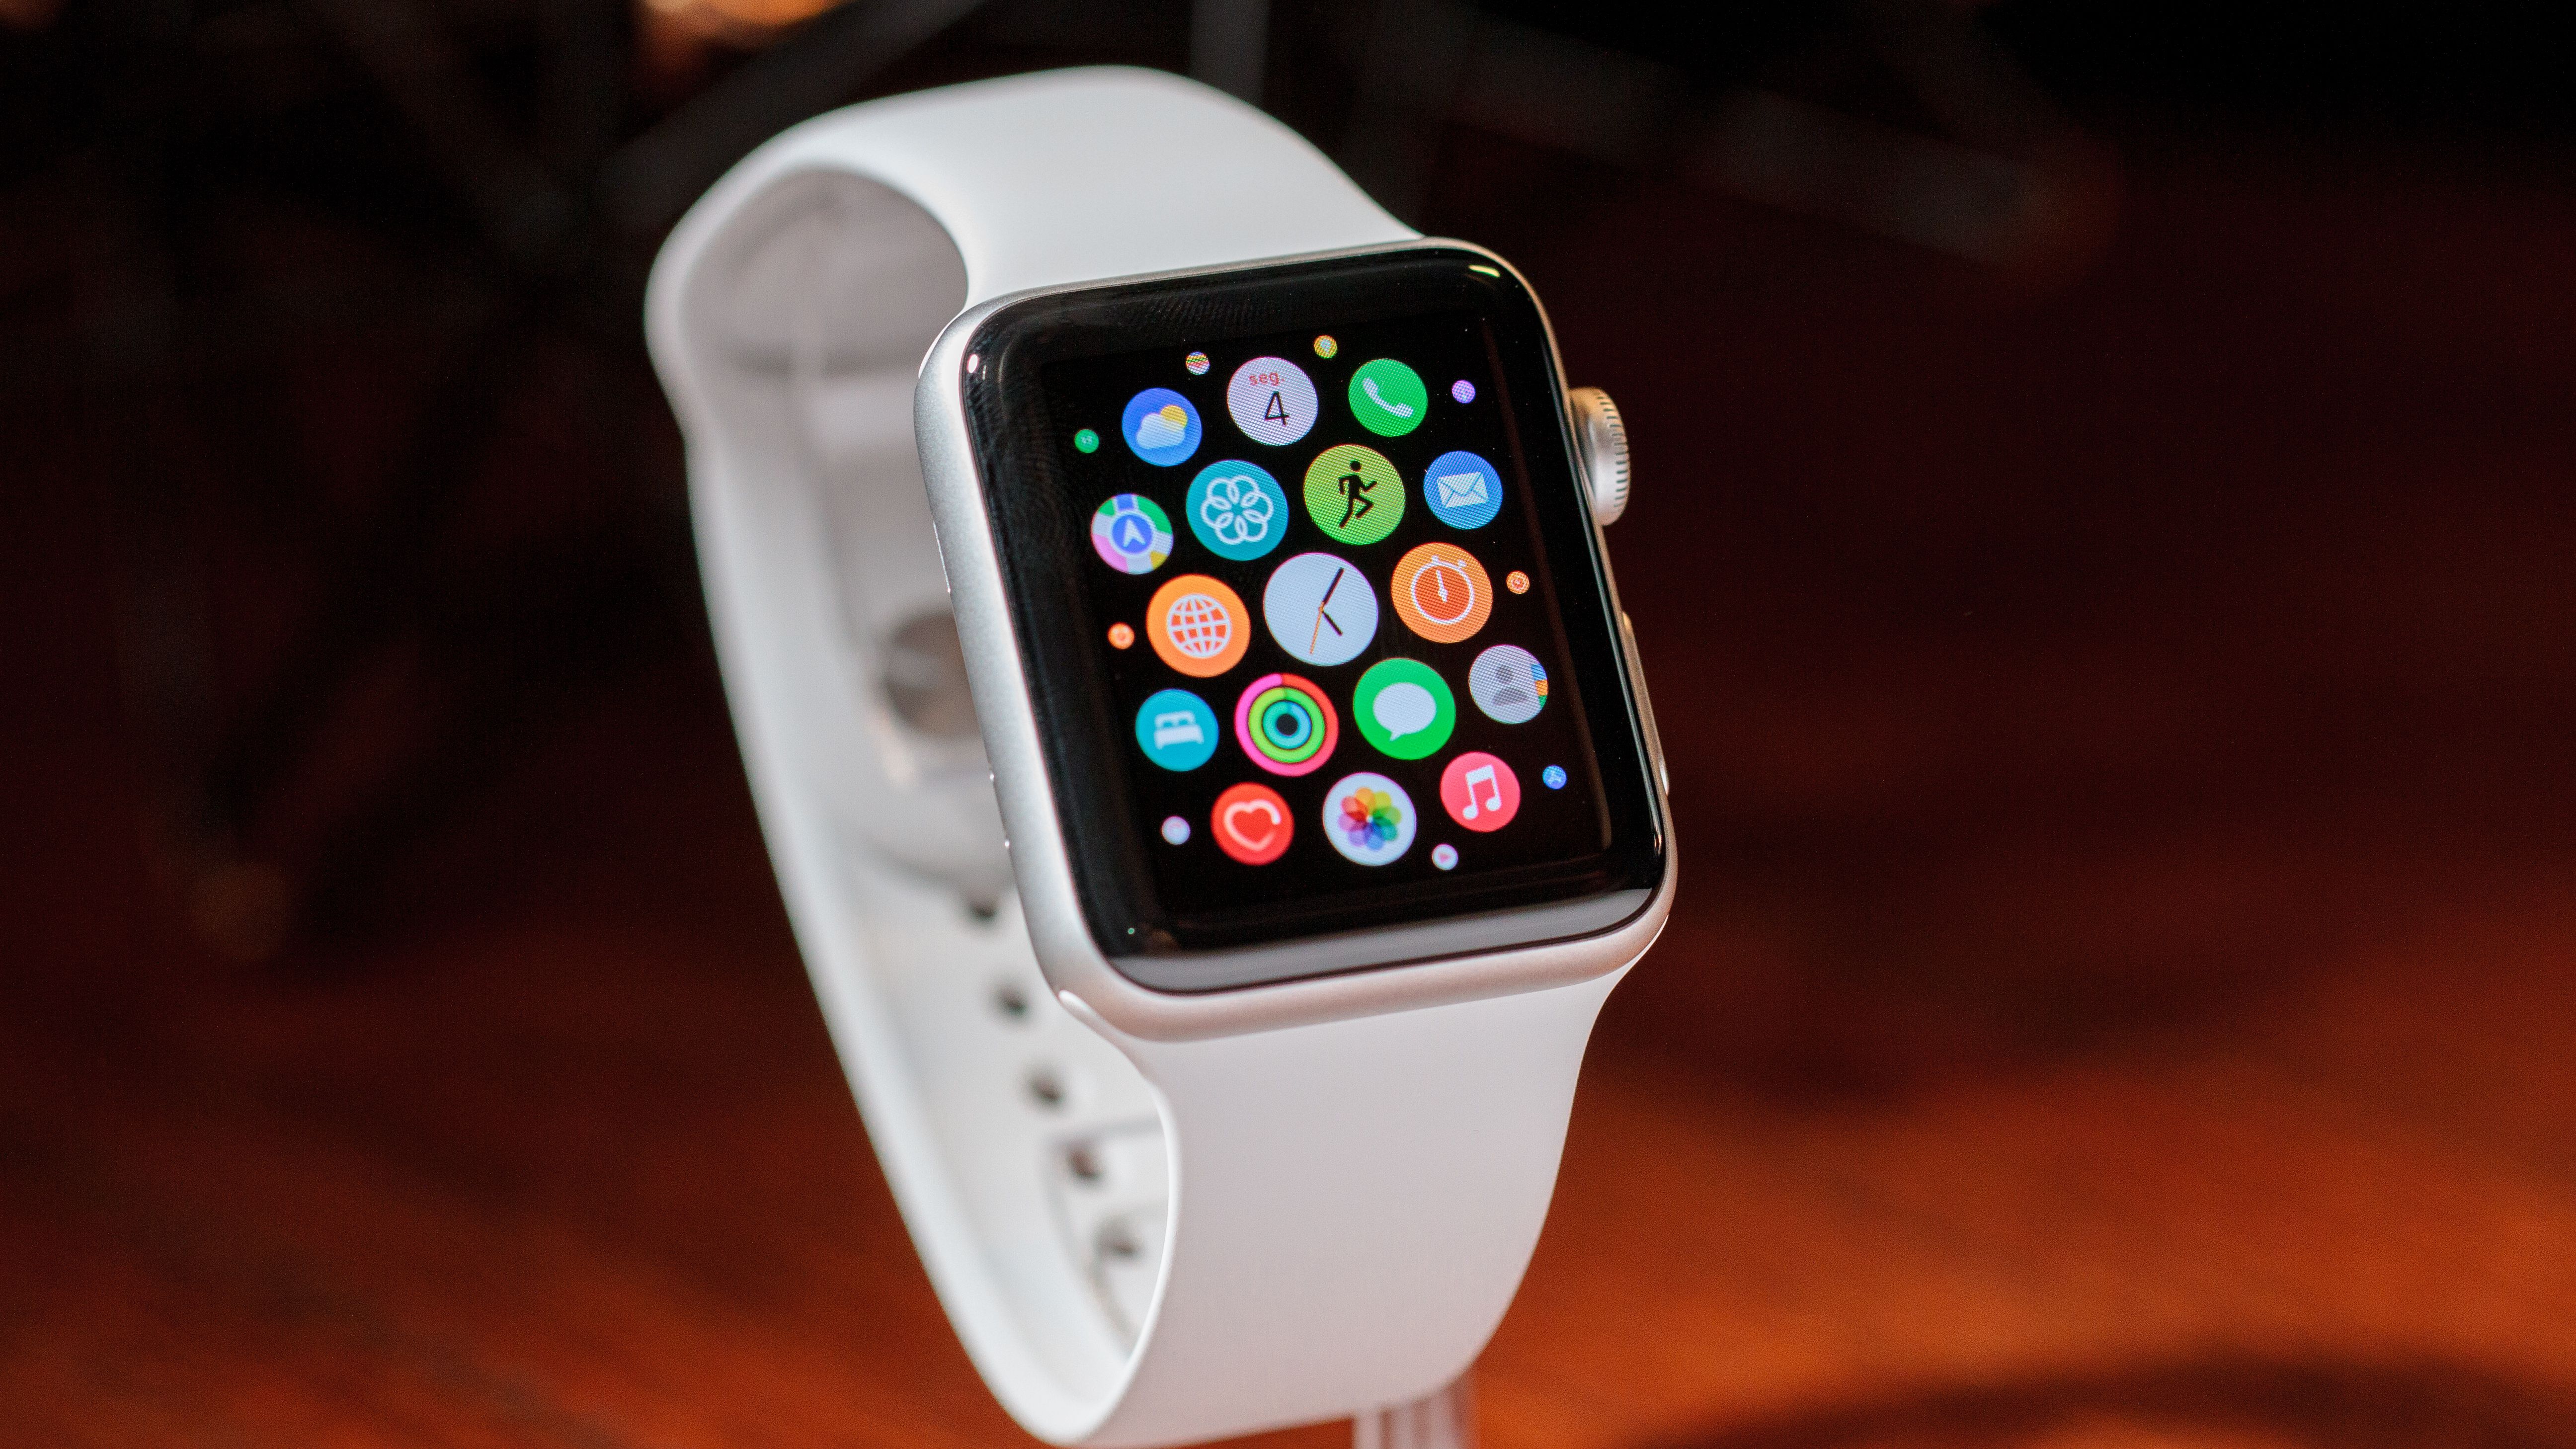 Apple Watch Series 8: especificações técnicas e recursos - Maçã